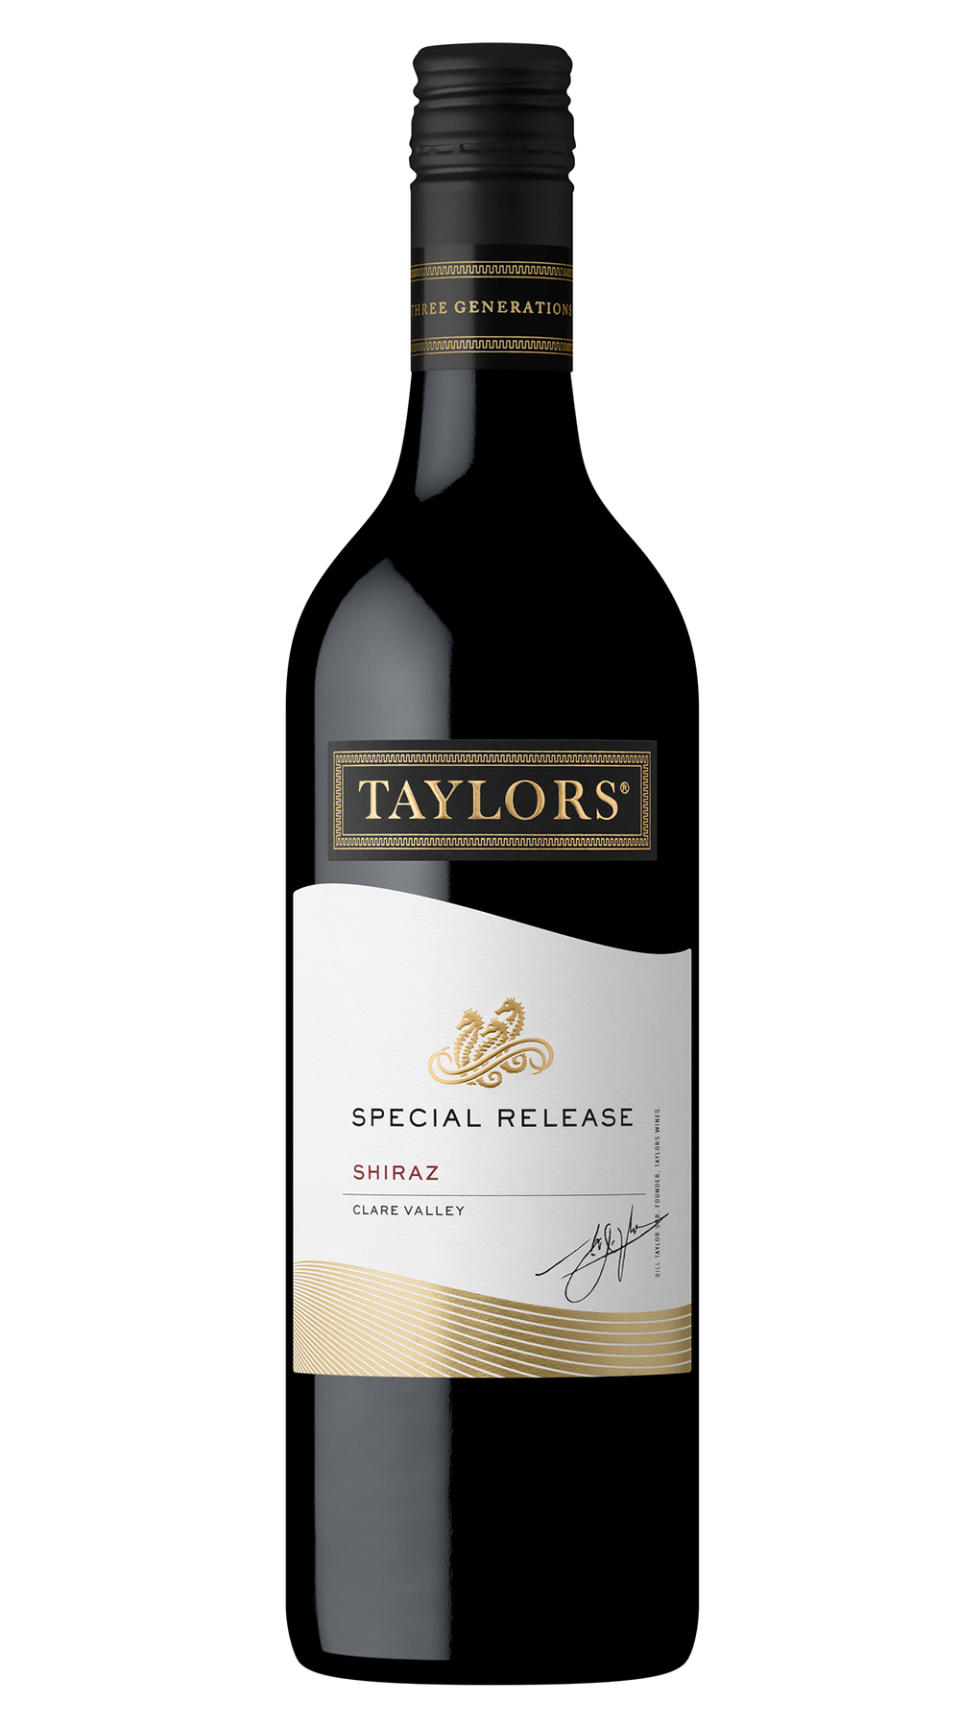 Taylors Estate Special Release Clare Valley Shiraz 2019 $14.99. Photo: Aldi (supplied).